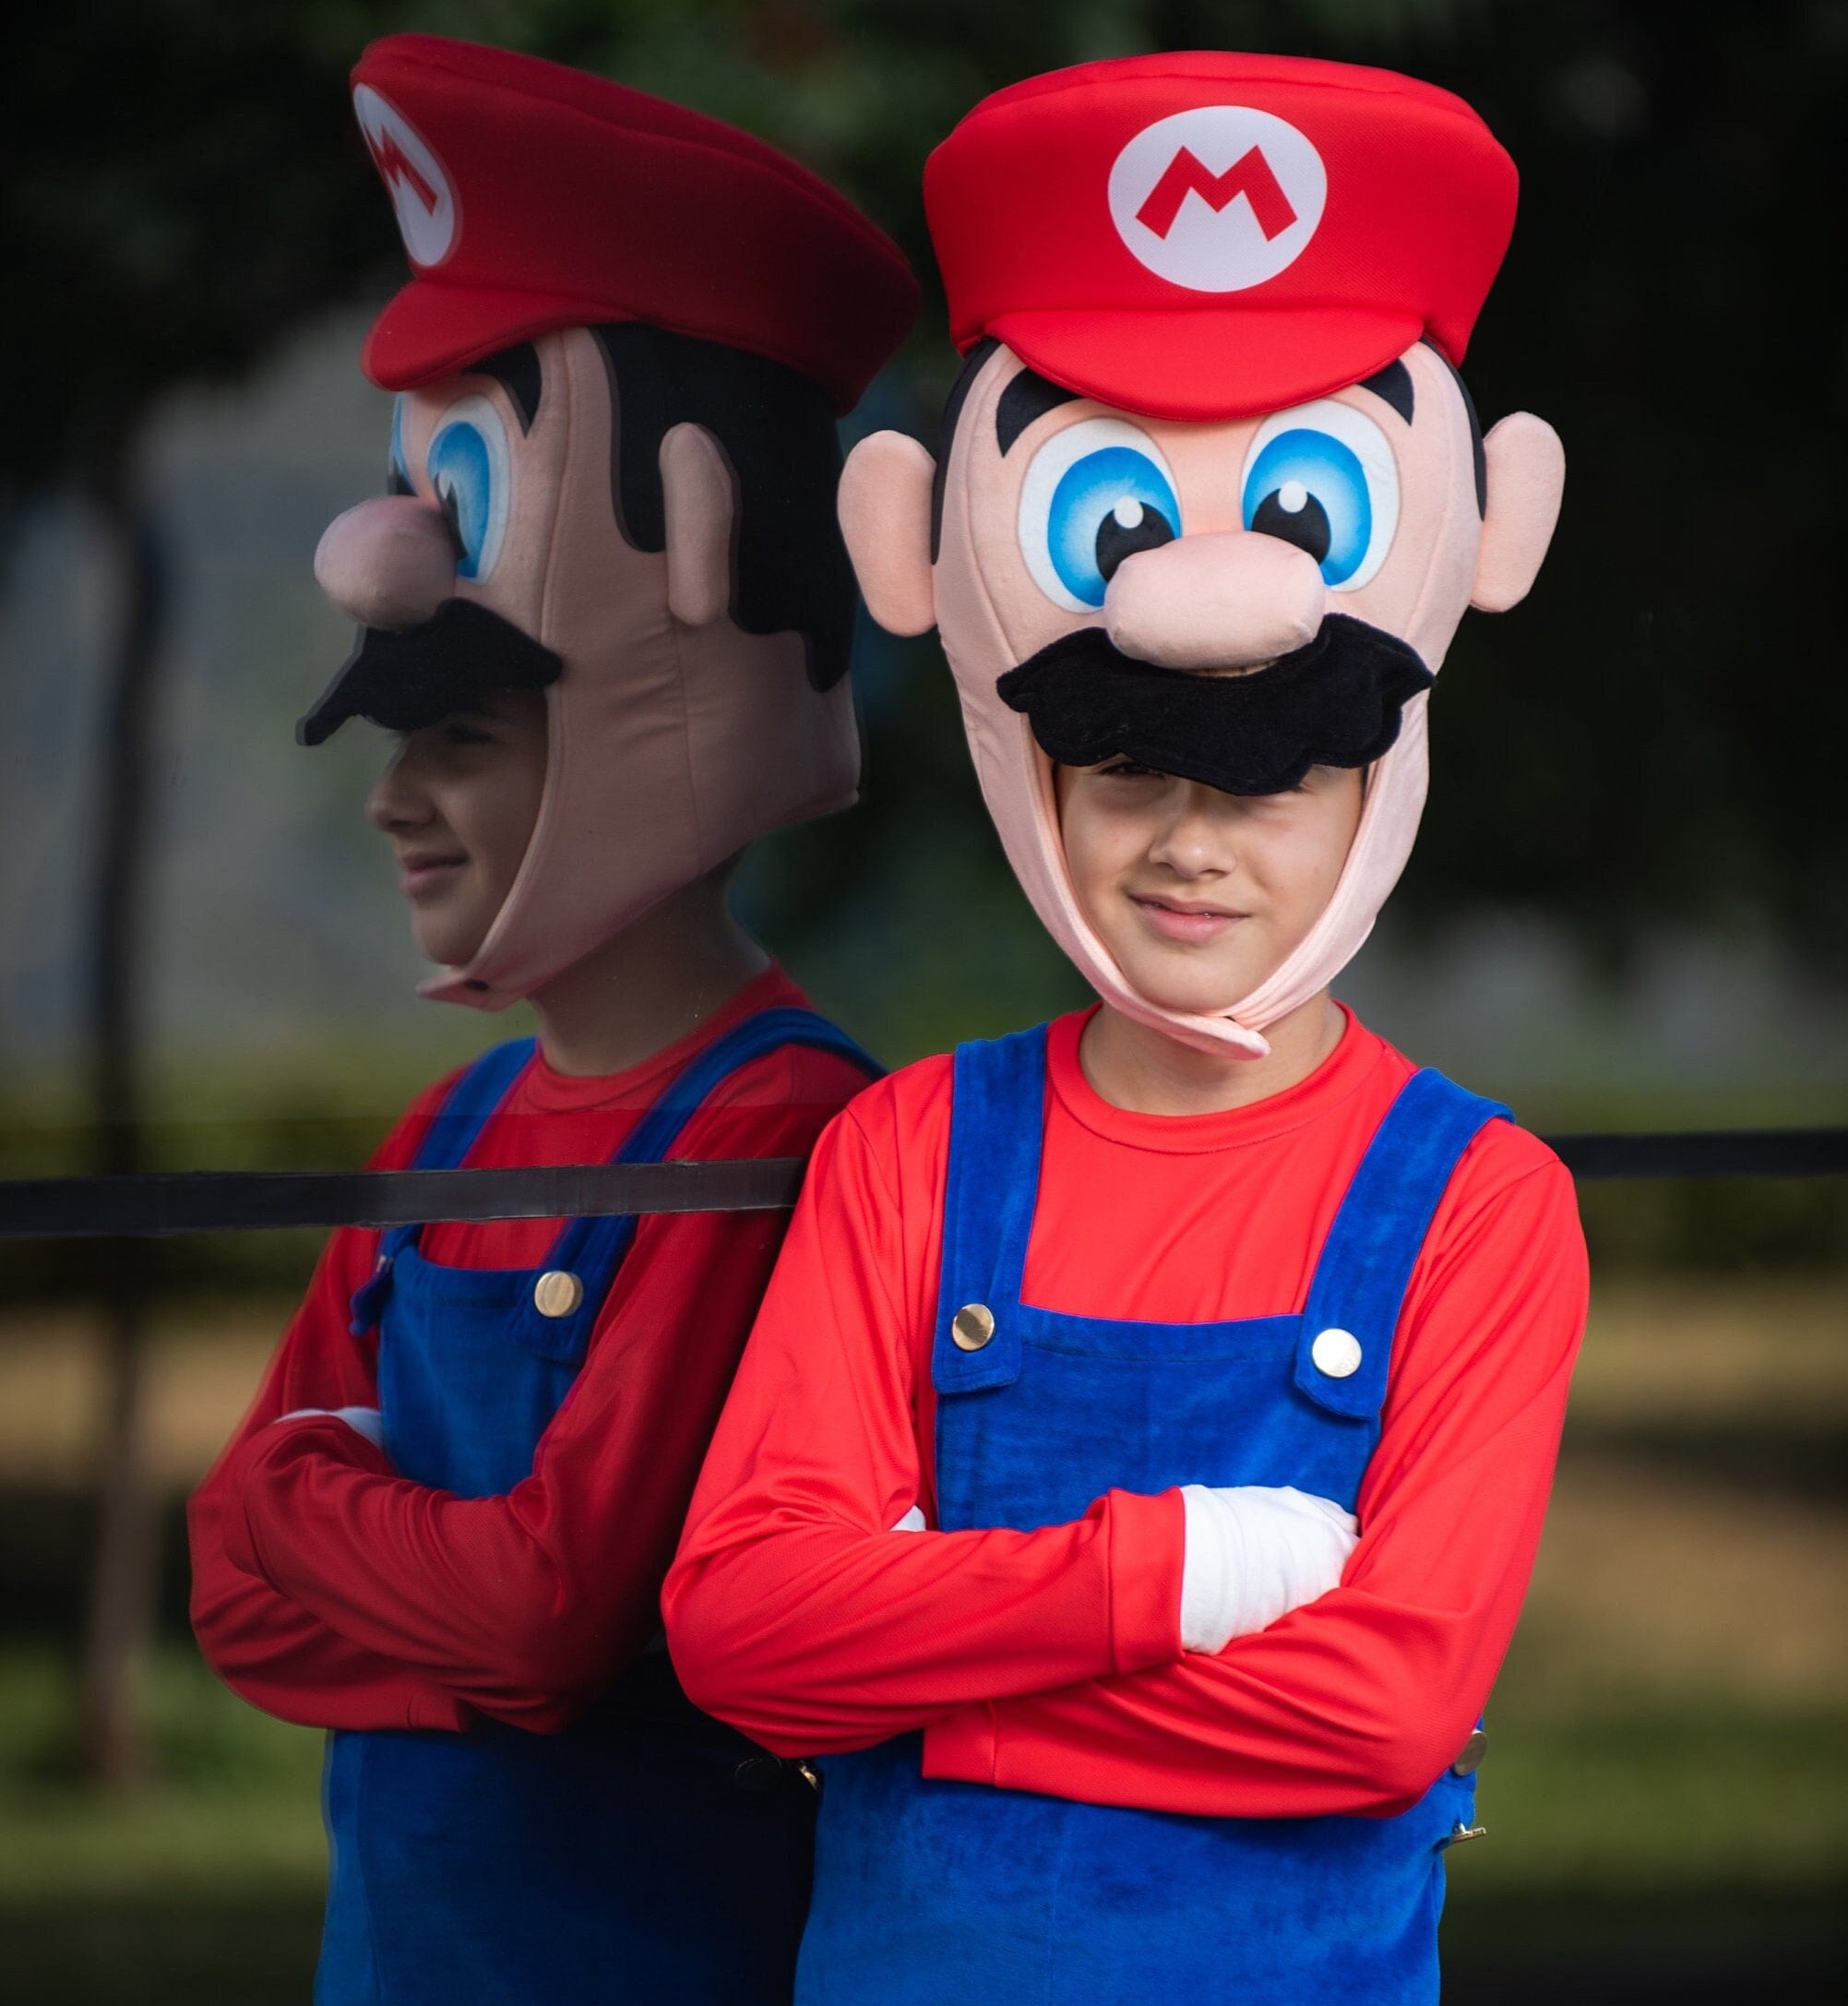 Buy Super Mario Costume Online In India -  India